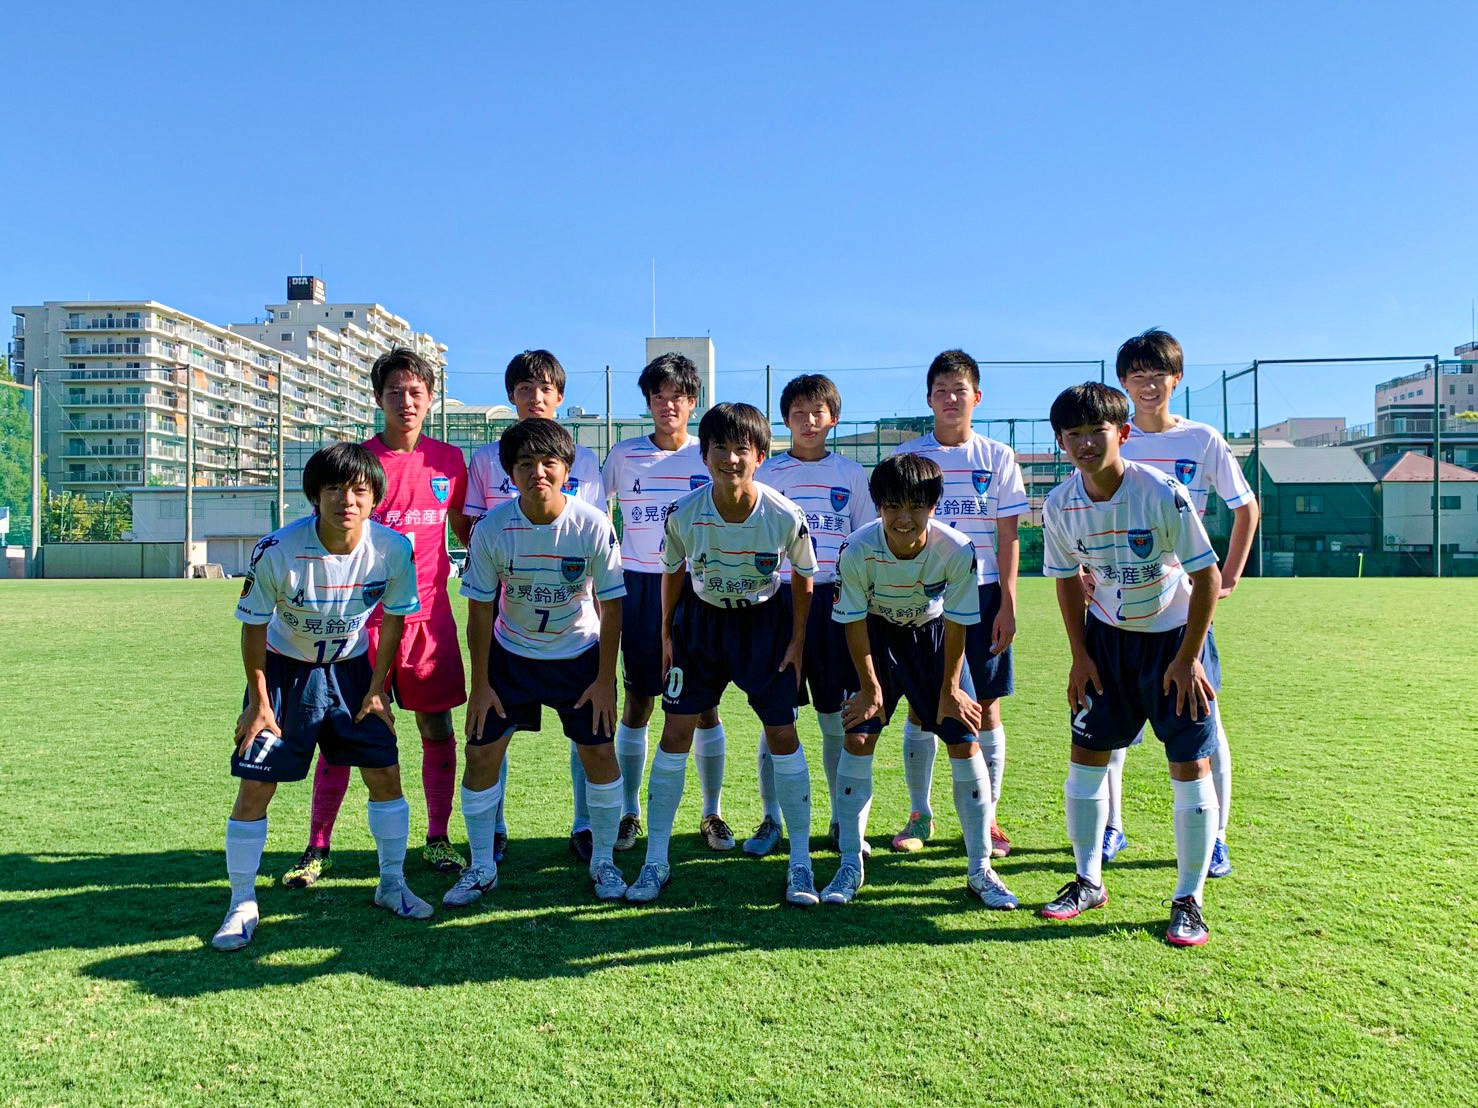 関東ユース U 15 サッカーリーグ1部 試合結果 横浜fcオフィシャルウェブサイト